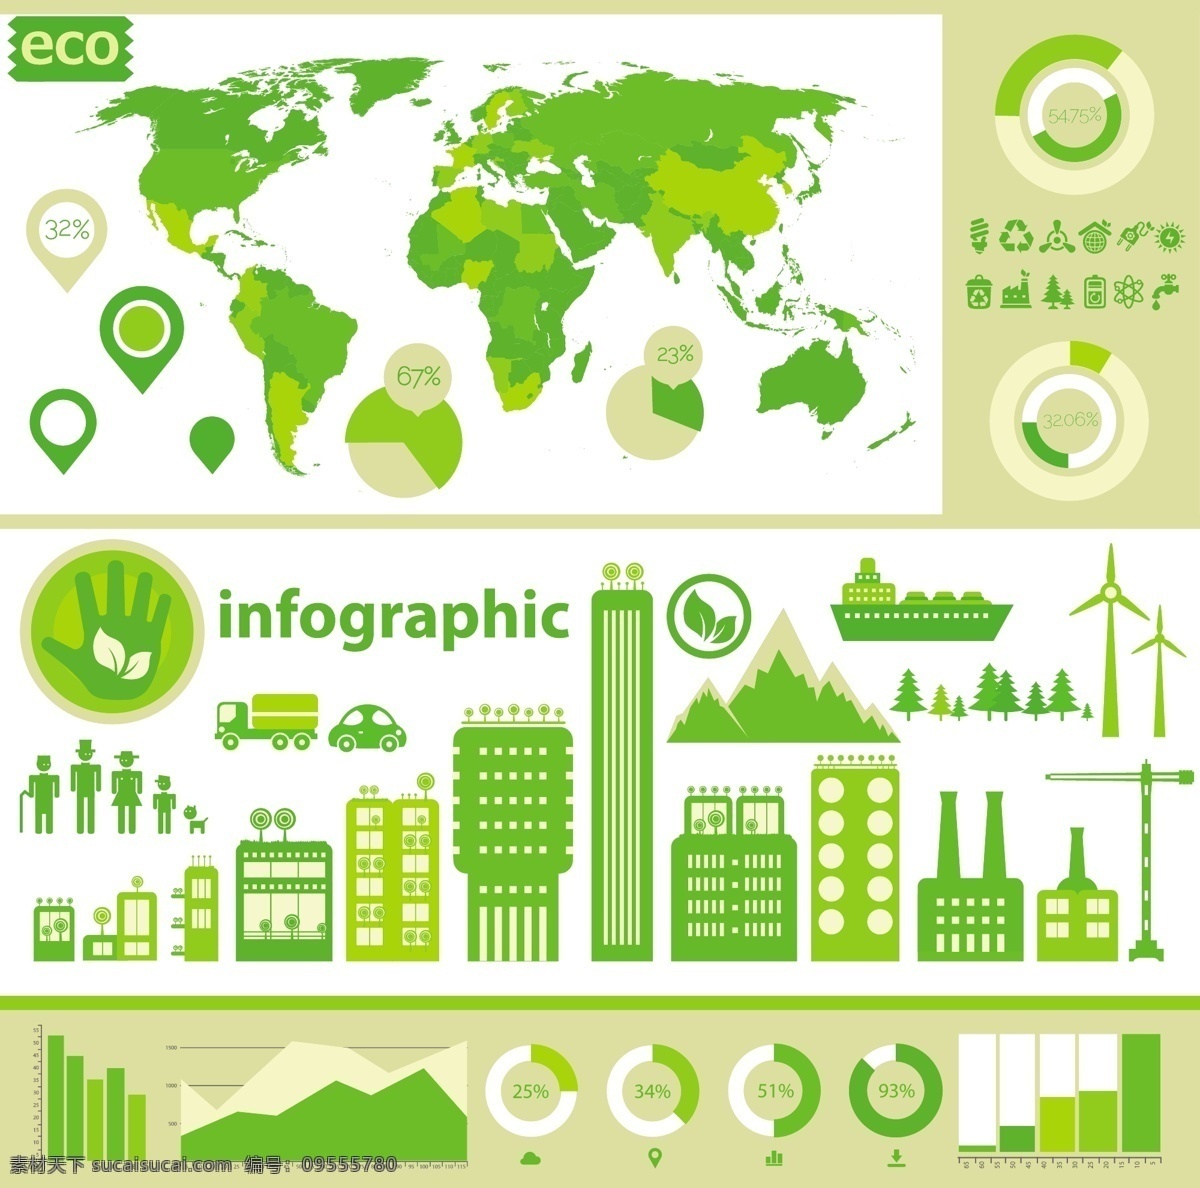 绿色环保 图表 绿色 环保 目录设计 立体图表 图表设计 办公学习 生活百科 矢量素材 白色